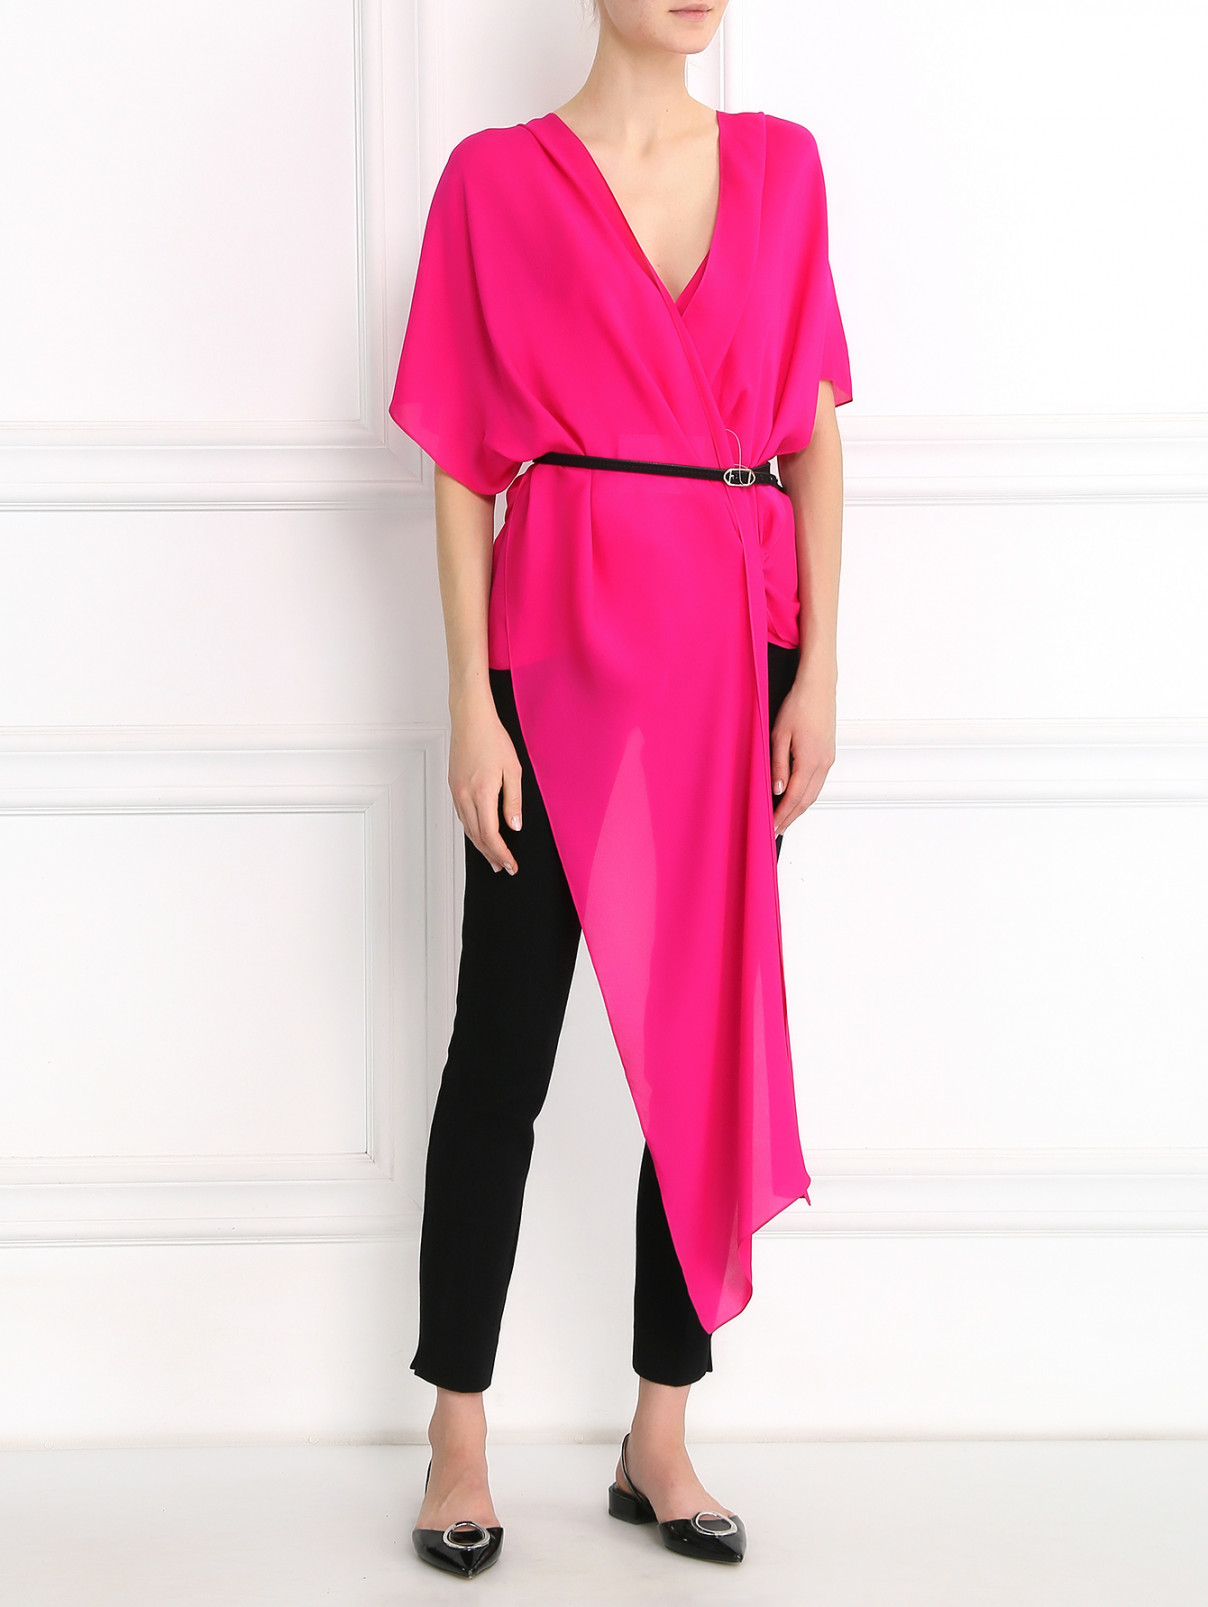 Блуза из шелка с запахом Barbara Bui  –  Модель Общий вид  – Цвет:  Розовый